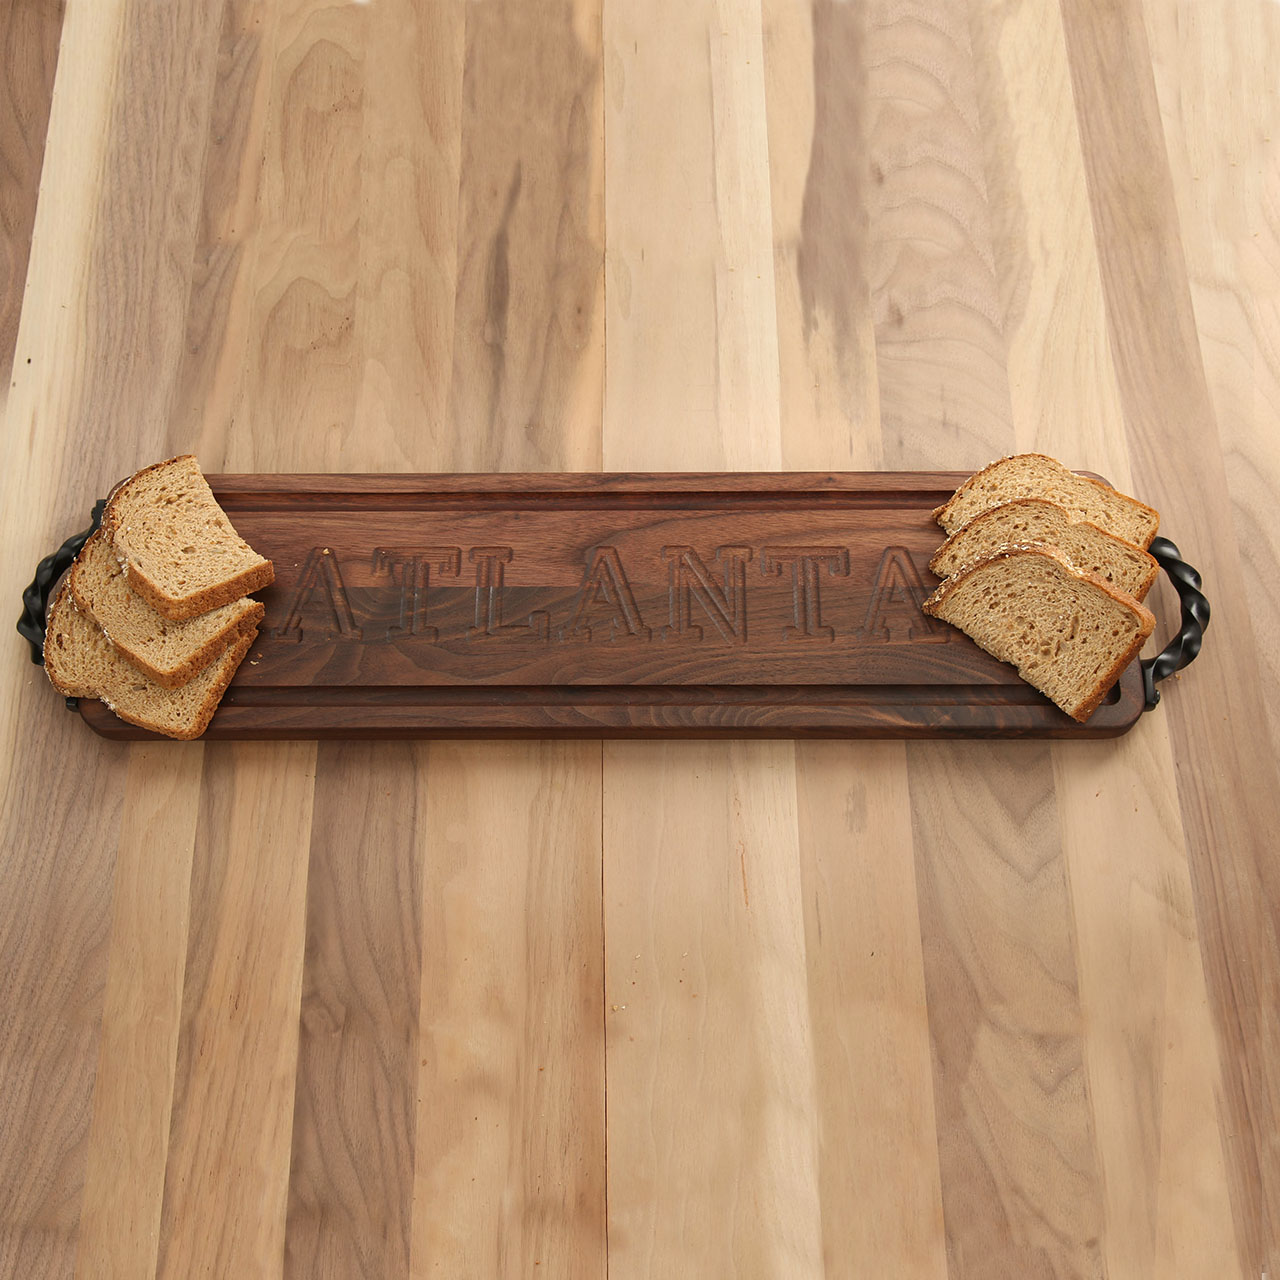 5 x 22 Walnut Bread Board